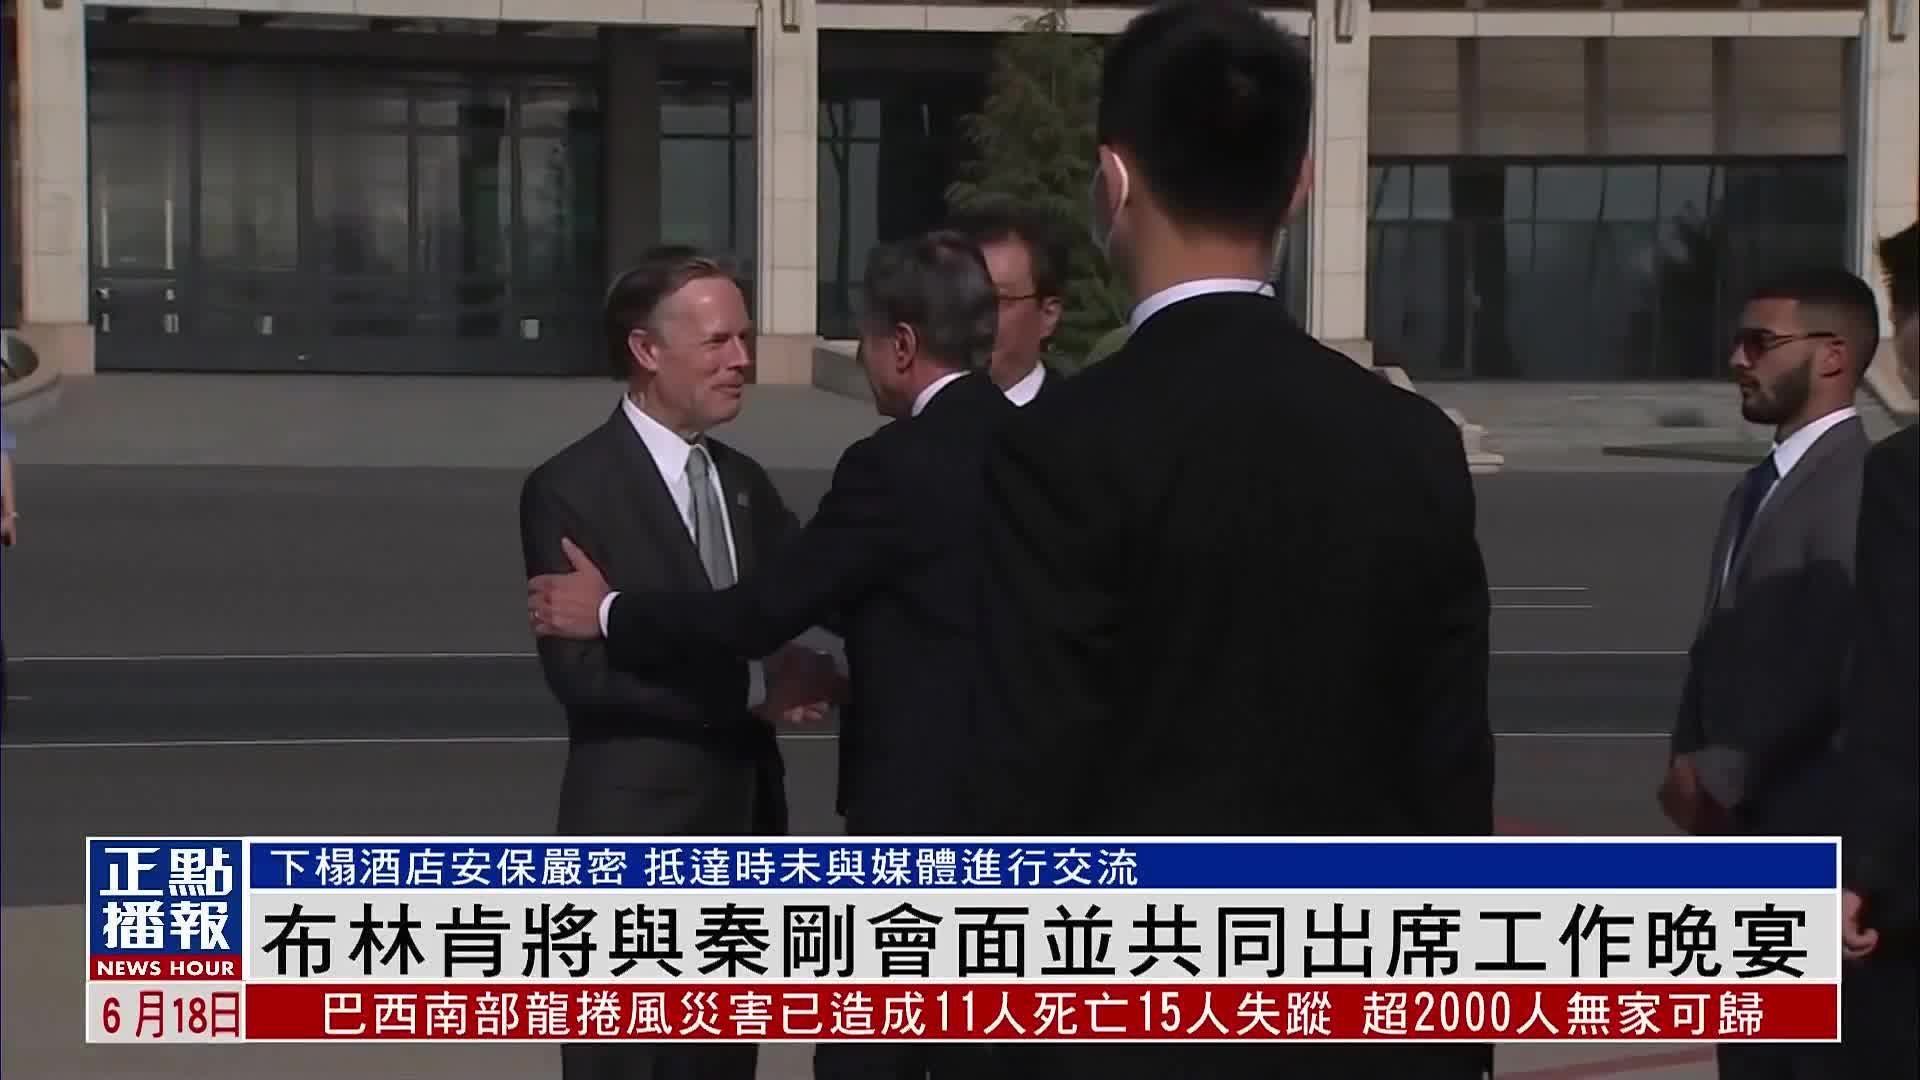 【视频/图集】秦刚与布林肯在北京举行会谈 | 联合早报